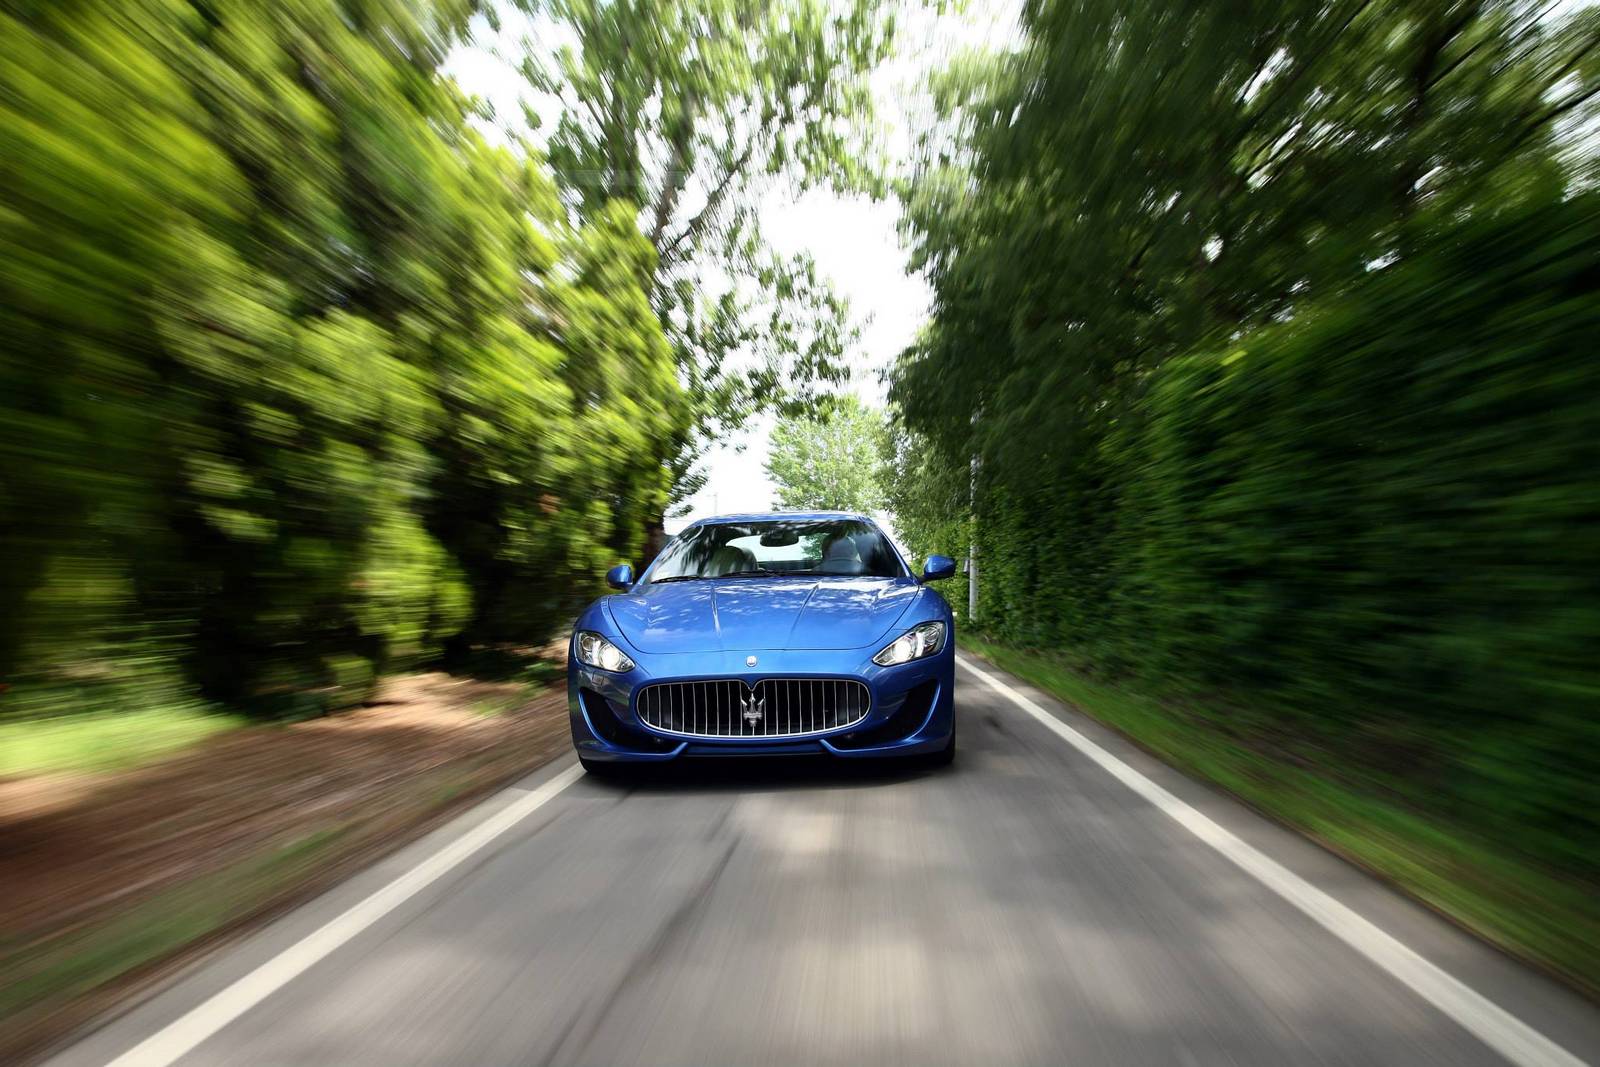 Gallery: Blue Maserati GranTurismo Sport on the Road ...